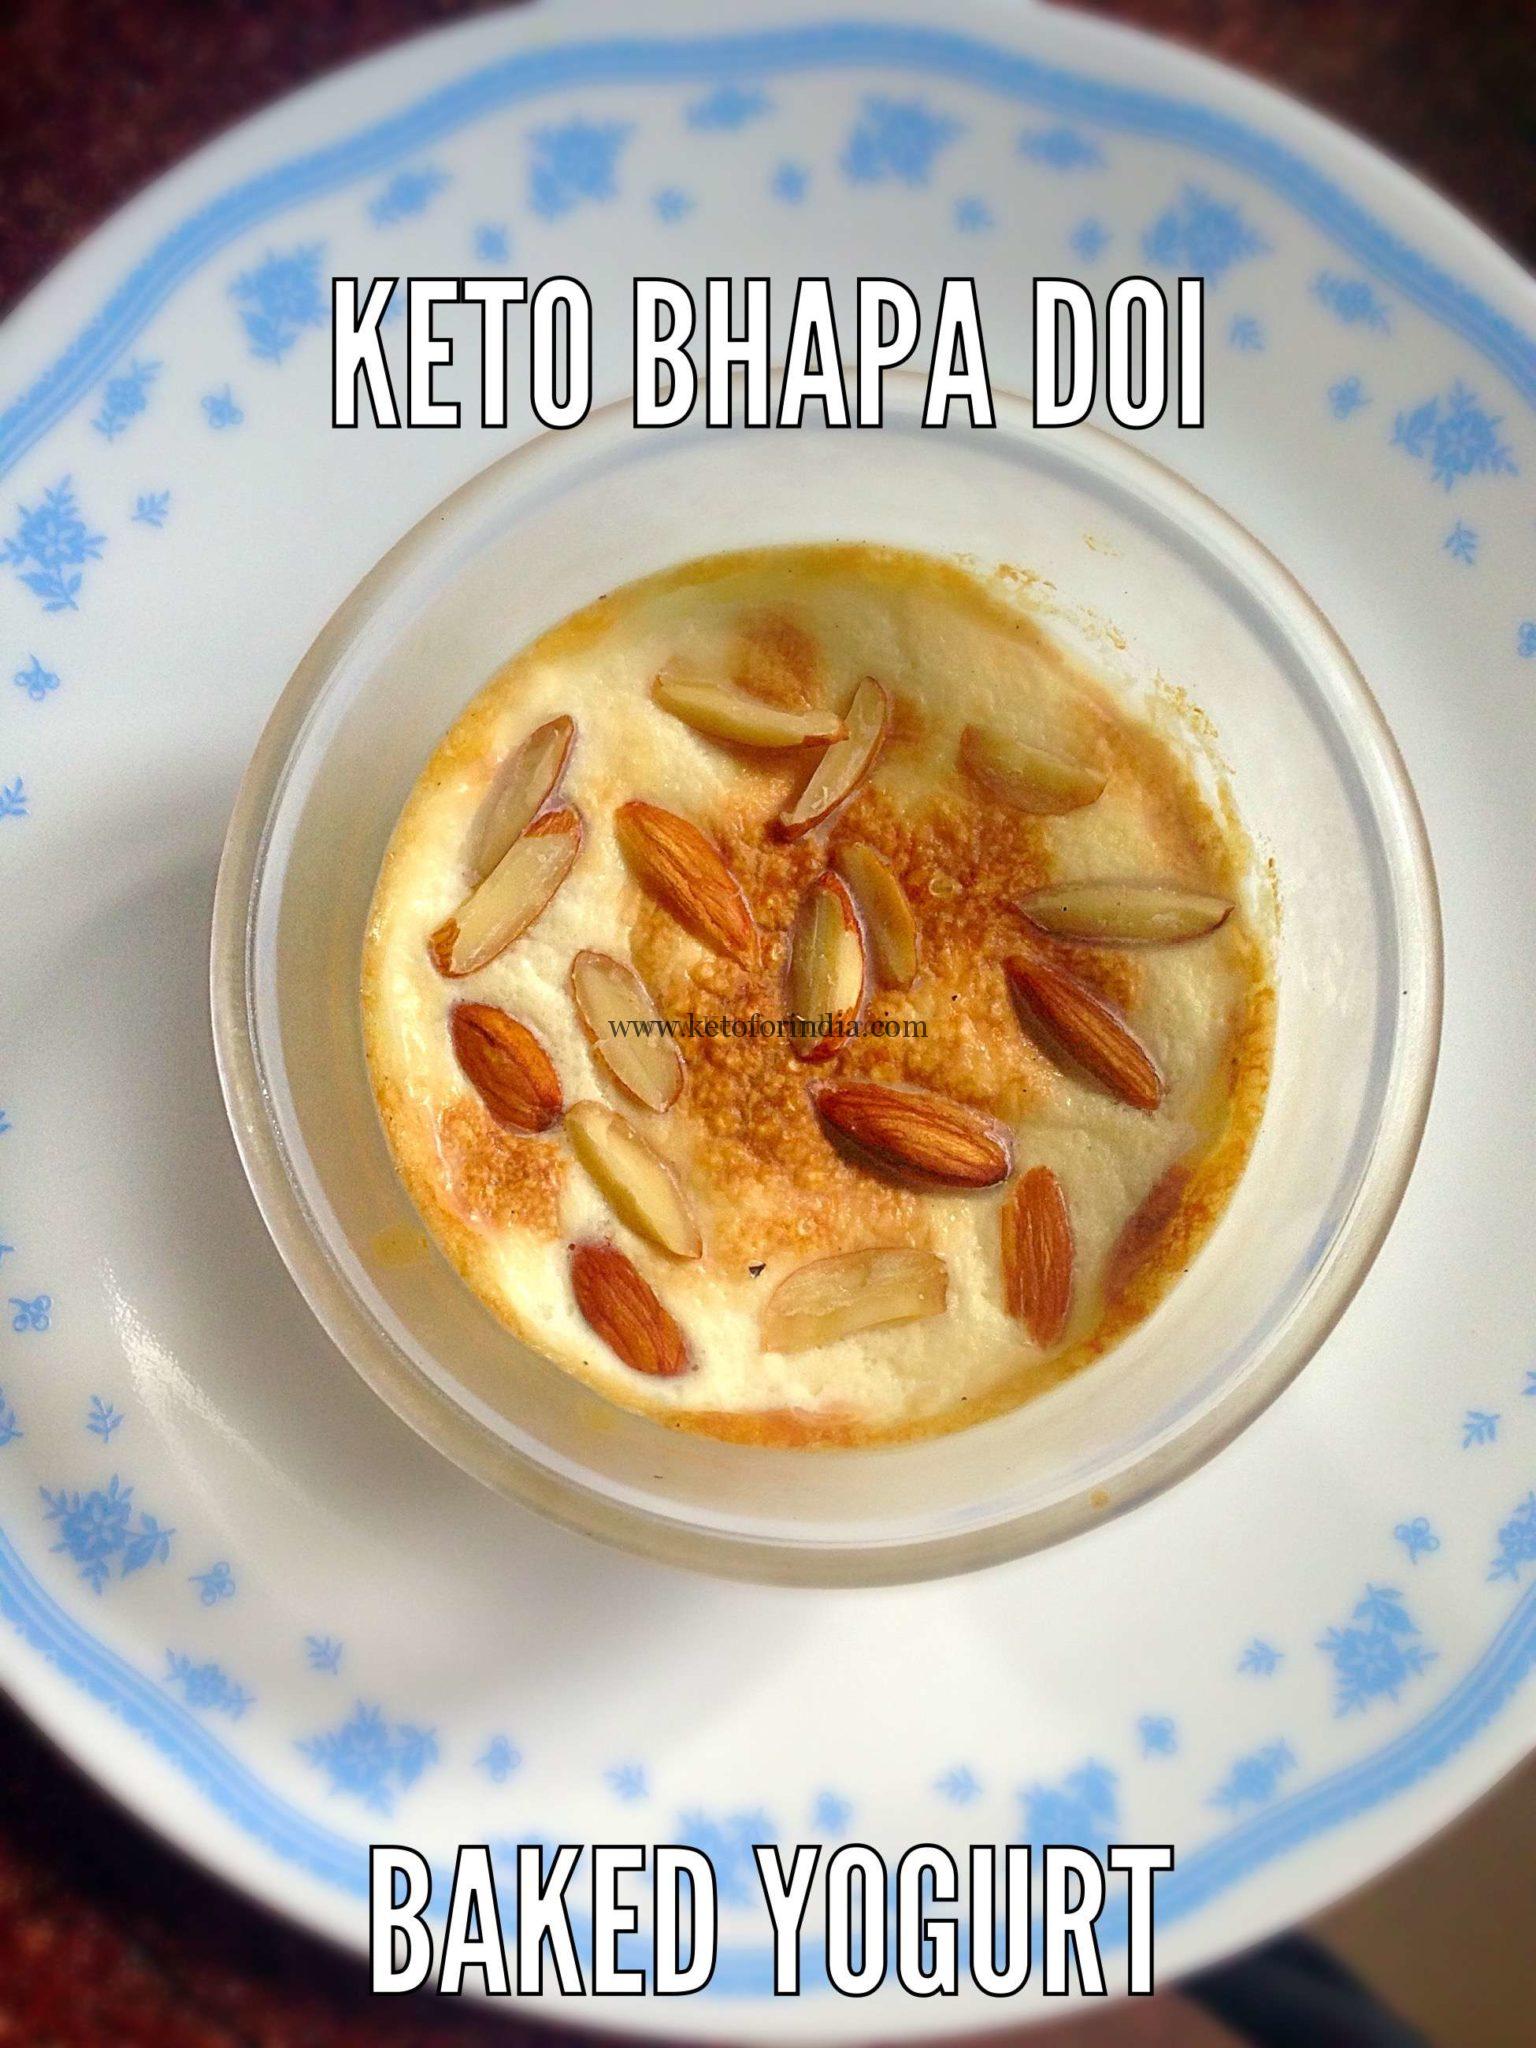 Priya’s Keto Bhapa Doi or Baked Yogurt